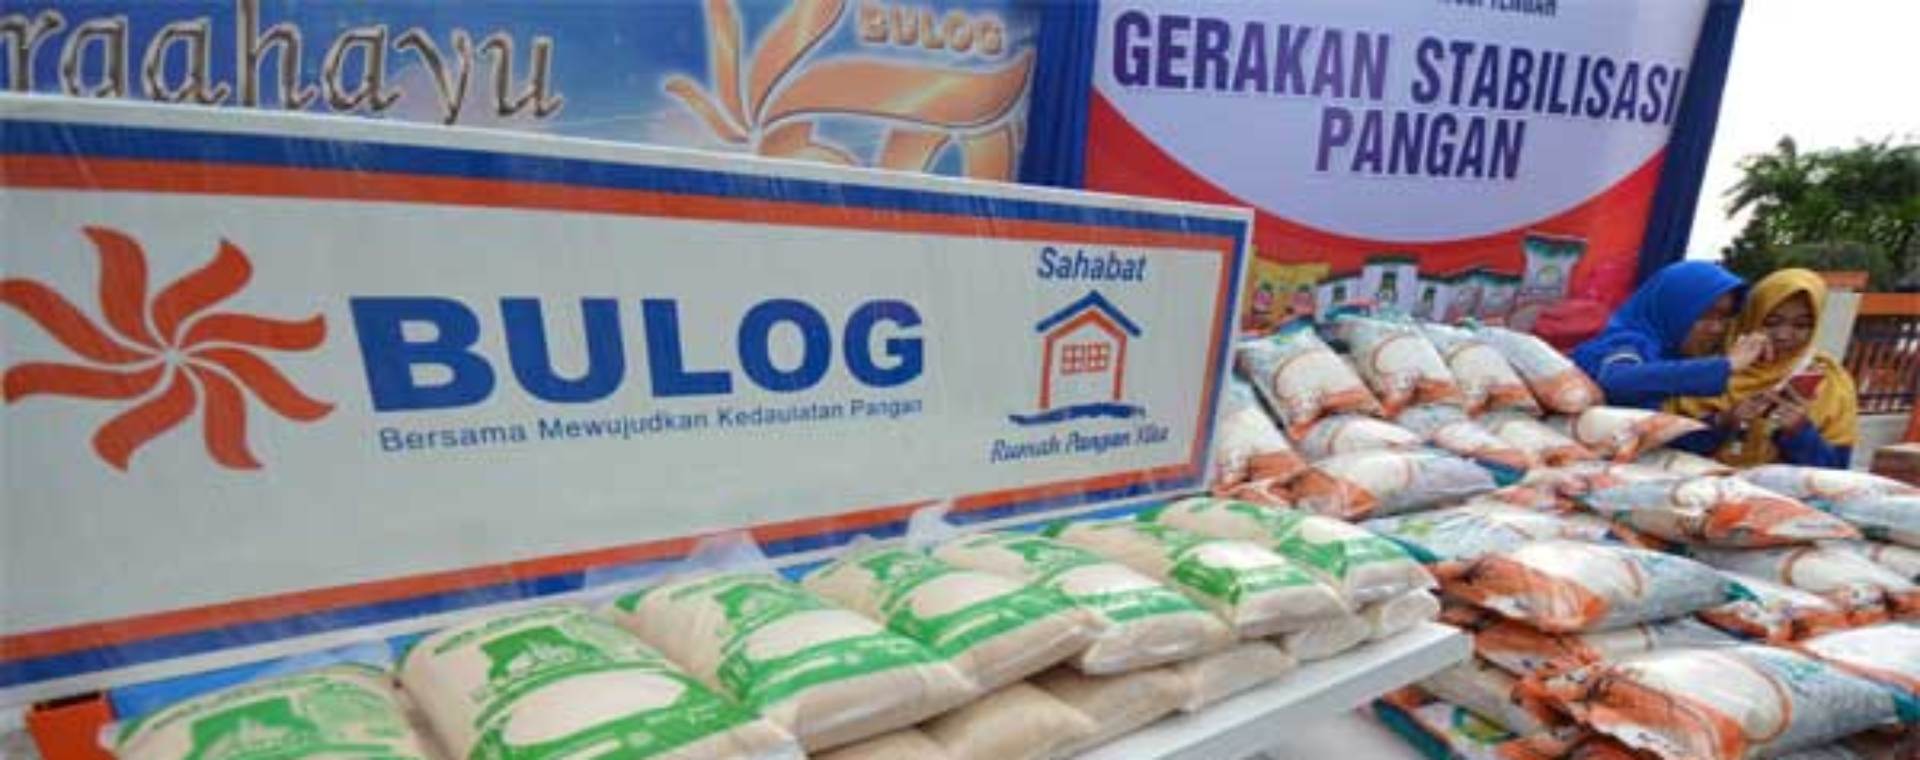 Petugas menjaga aneka produk pangan yang dijual usai peluncuran Gerakan Stabilisasi Pangan oleh Bulog, di Palu, Sulawesi Tengah, Rabu (17/5). - Antara/Basri Marzuki